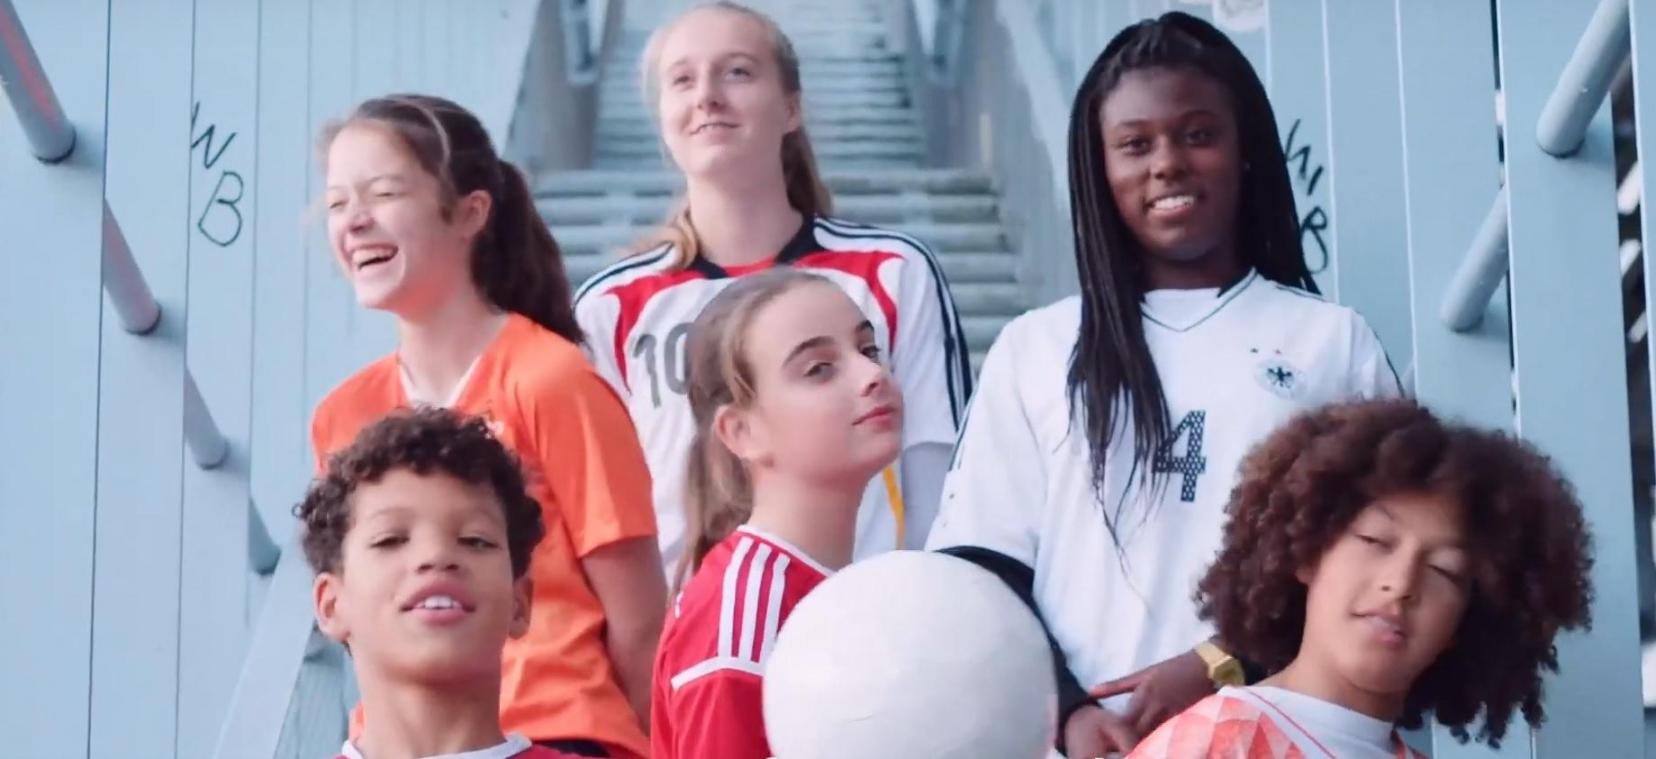 <p>Gemeinsam zum Ziel: Belgien, Deutschland und die Niederlande wollen zusammen die Frauen-WM 20207 ausrichten.</p>